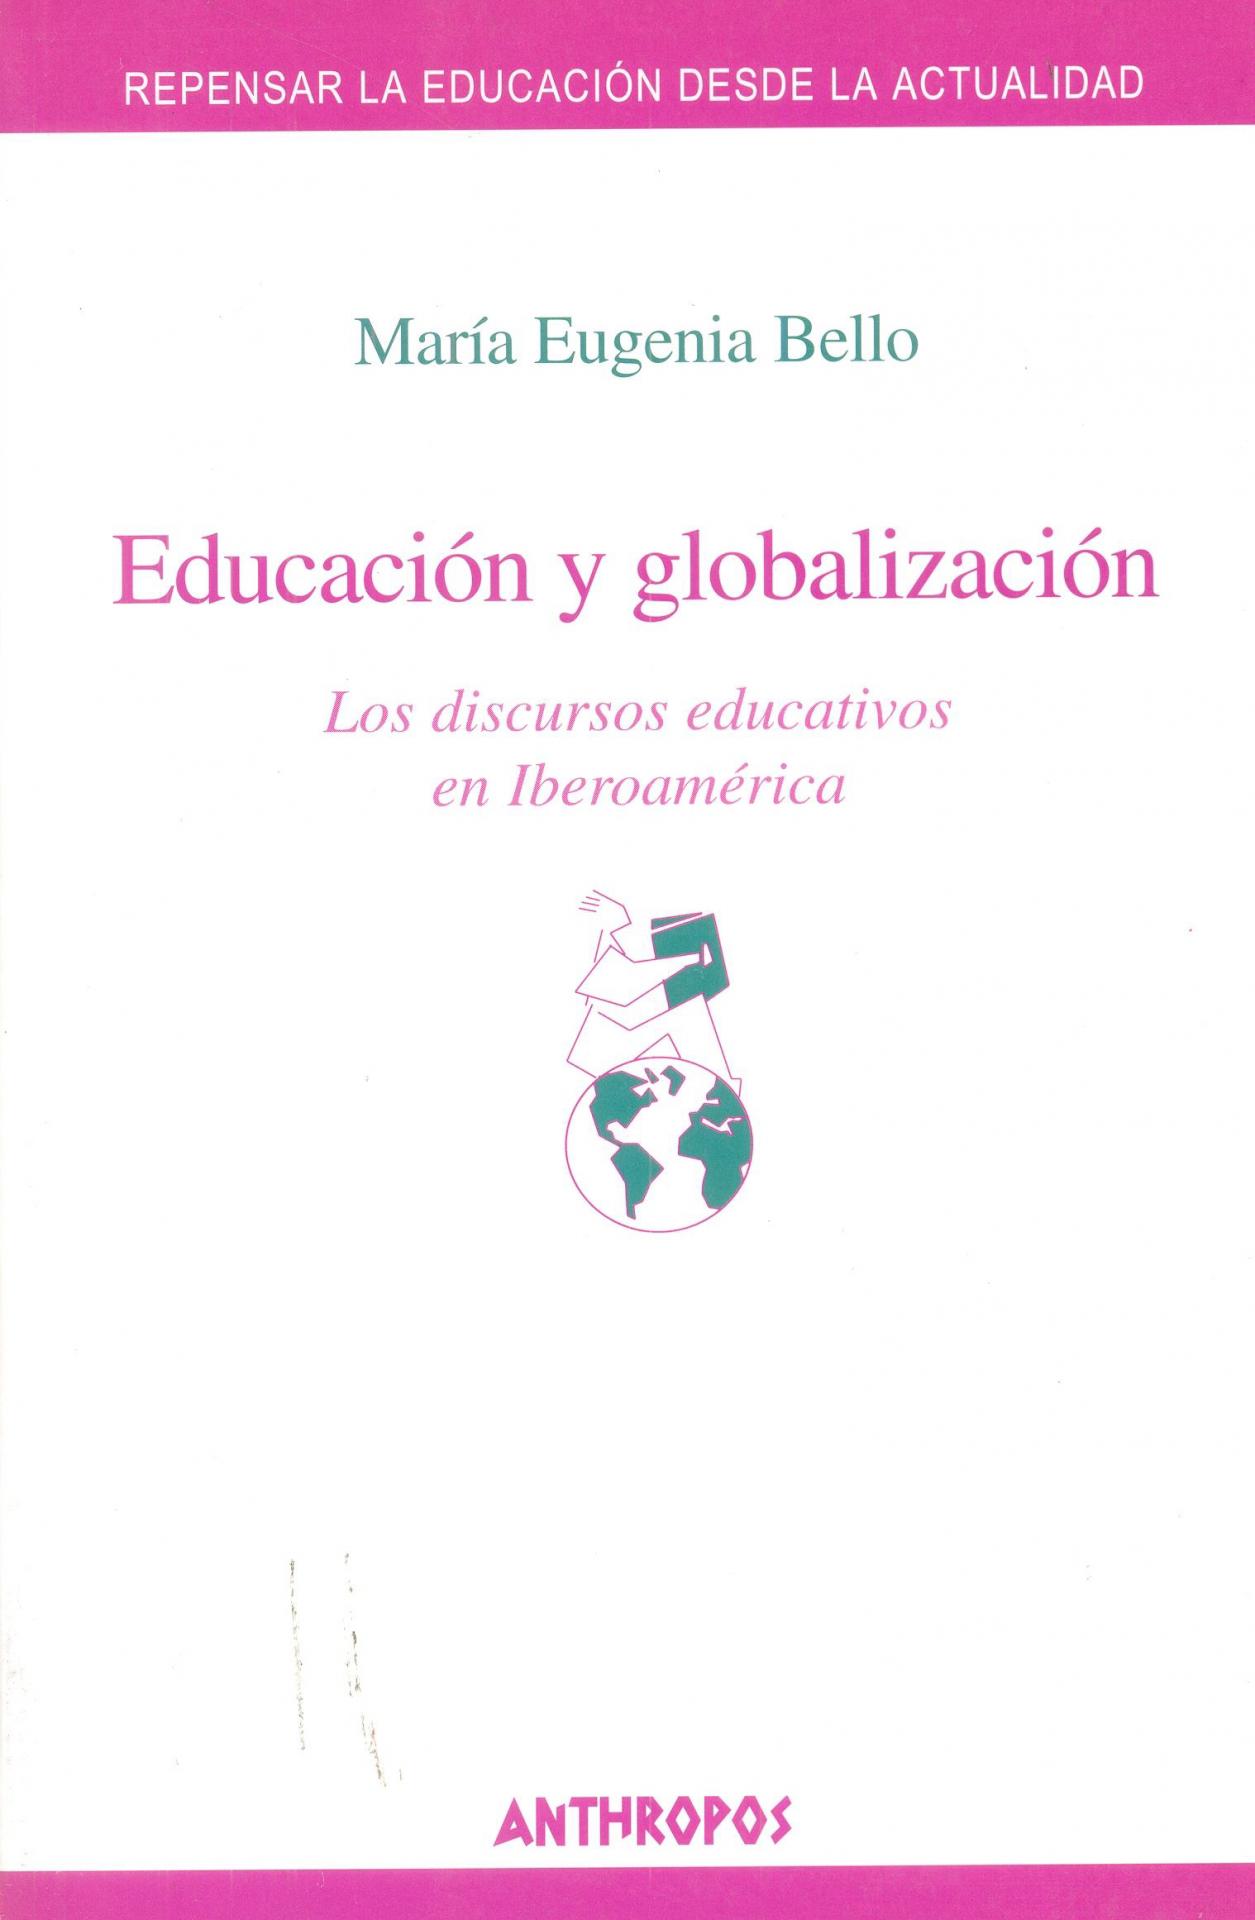 EDUCACIÓN Y GLOBALIZACIÓN. Los discursos educativos en Iberoamérica. Bello, M.A.